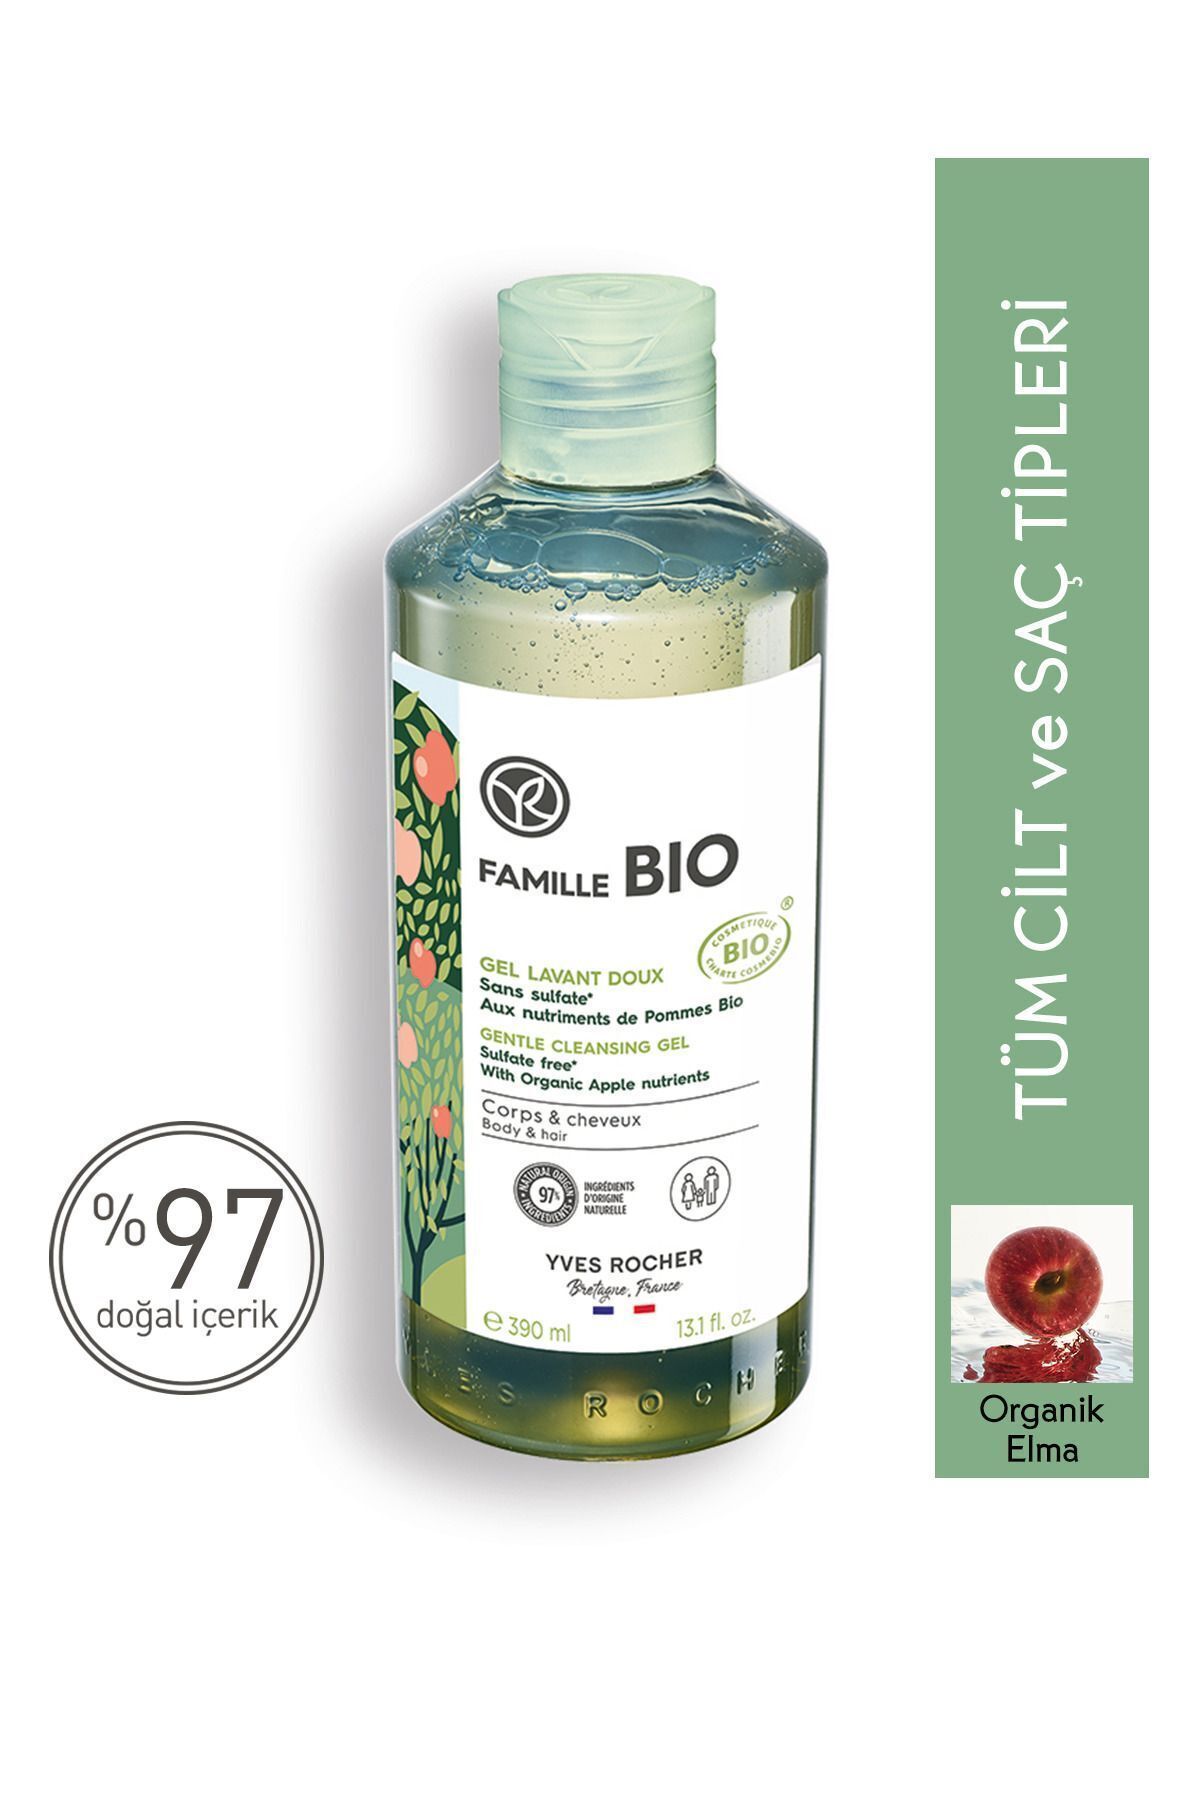 Yves Rocher Tüm Aile Için Organik Sertifikalı Famille Bio Saç Ve Vücut Şampuanı-390 Ml-90686